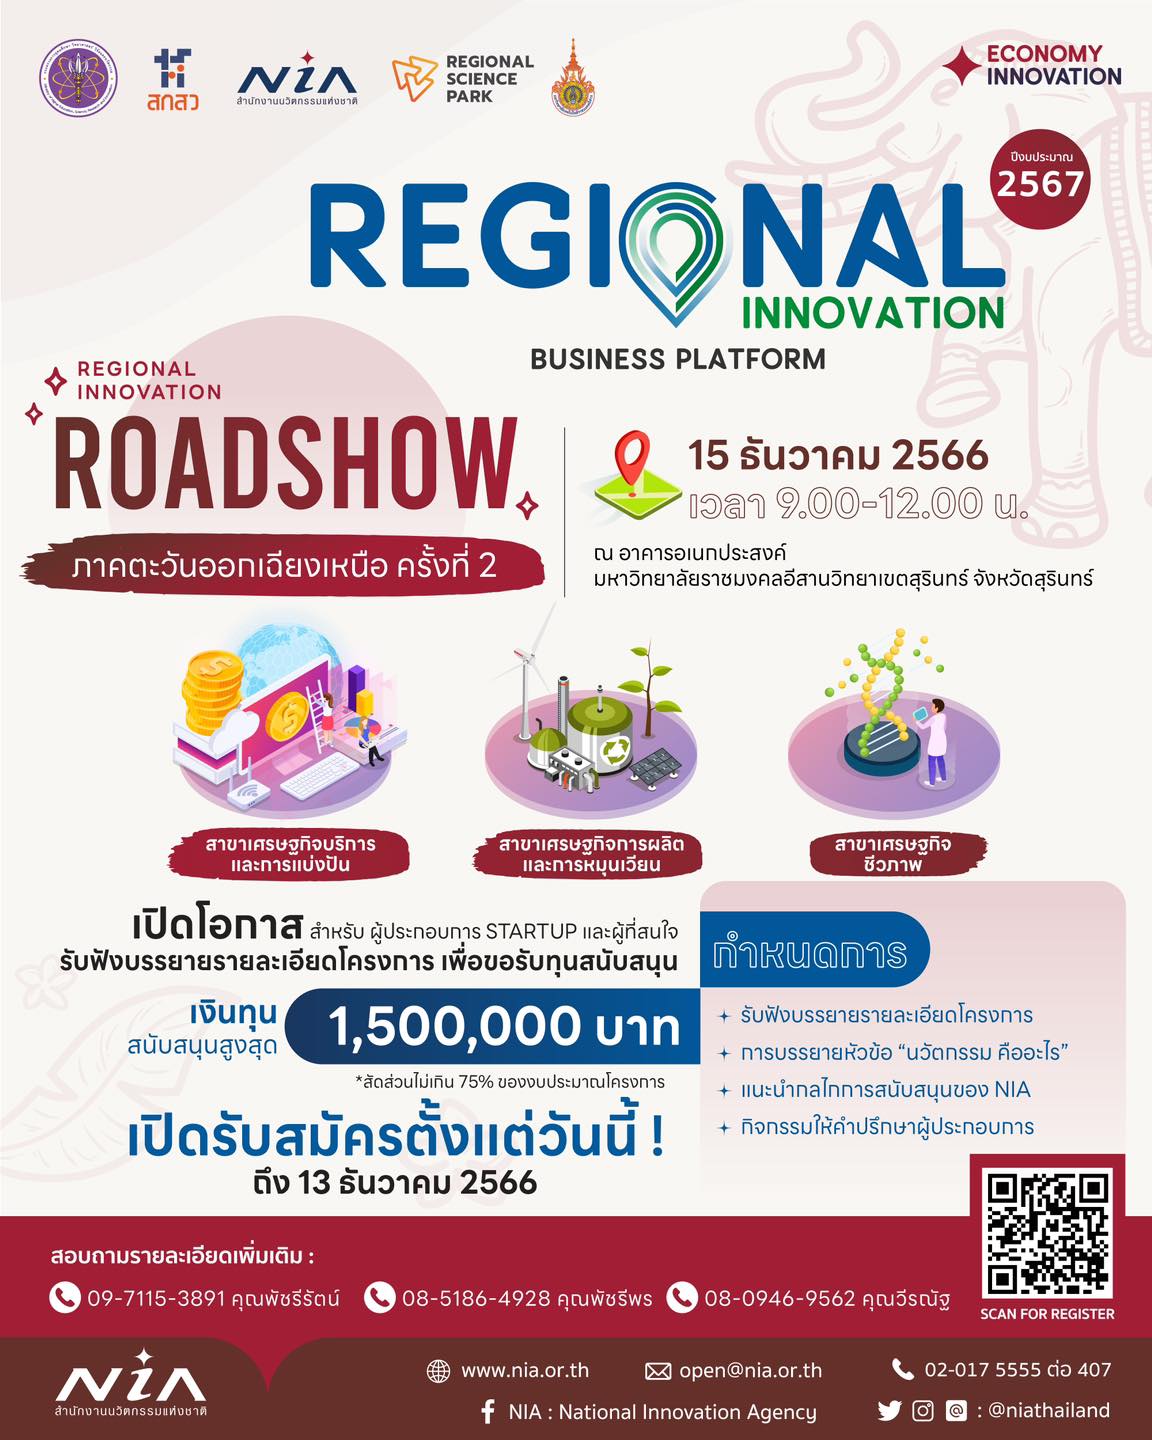 กิจกรรม “Regional Innovation Roadshow” ภาคตะวันออกเฉียงเหนือประจำปีงบประมาณ 2567 ครั้งที่ 2